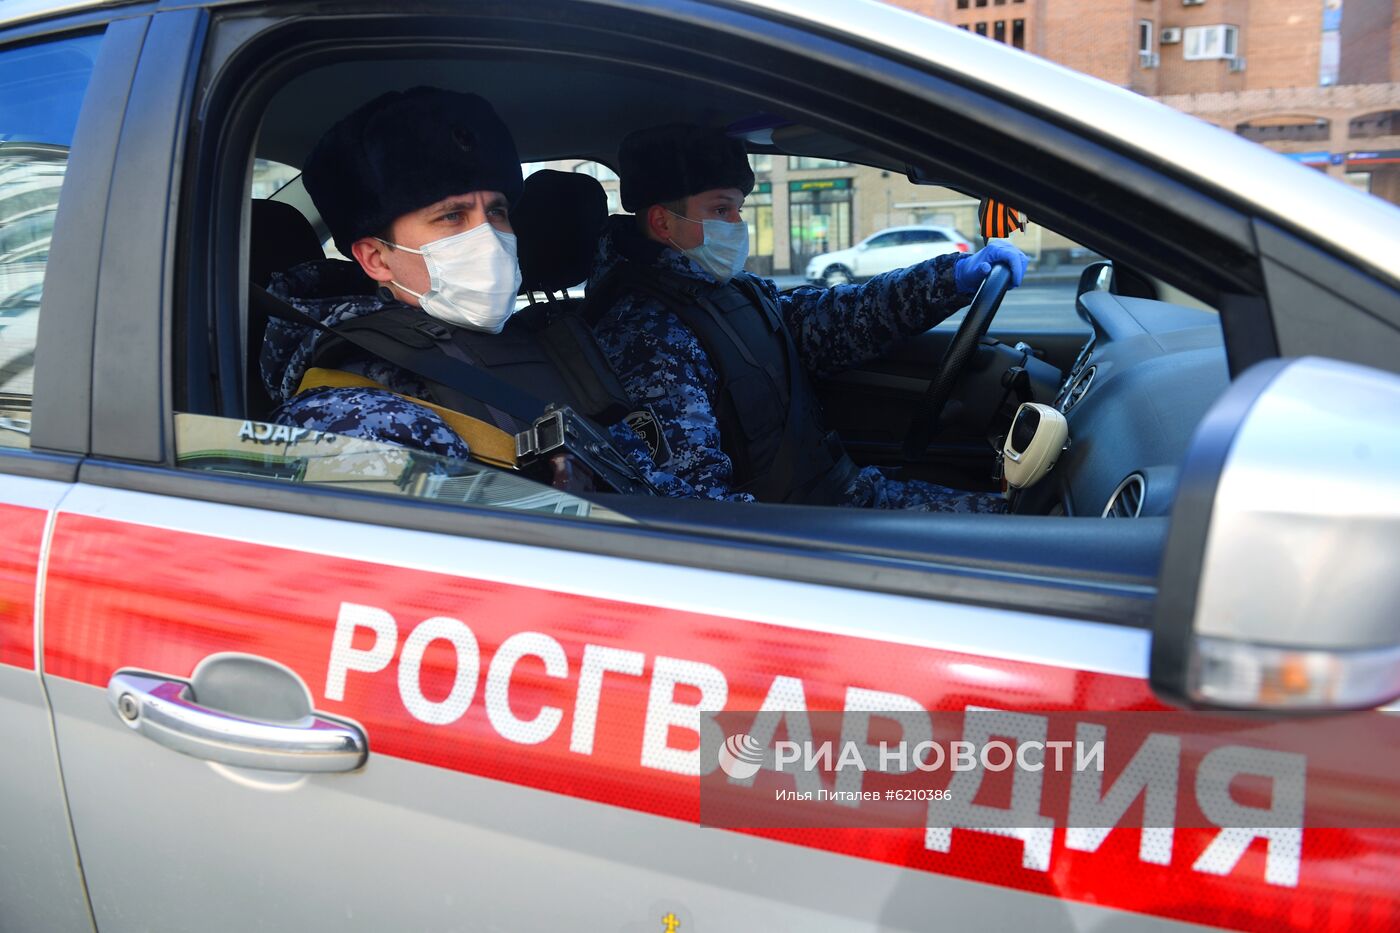 Проверка сотрудниками правоохранительных органов соблюдения режима самоизоляции в Москве